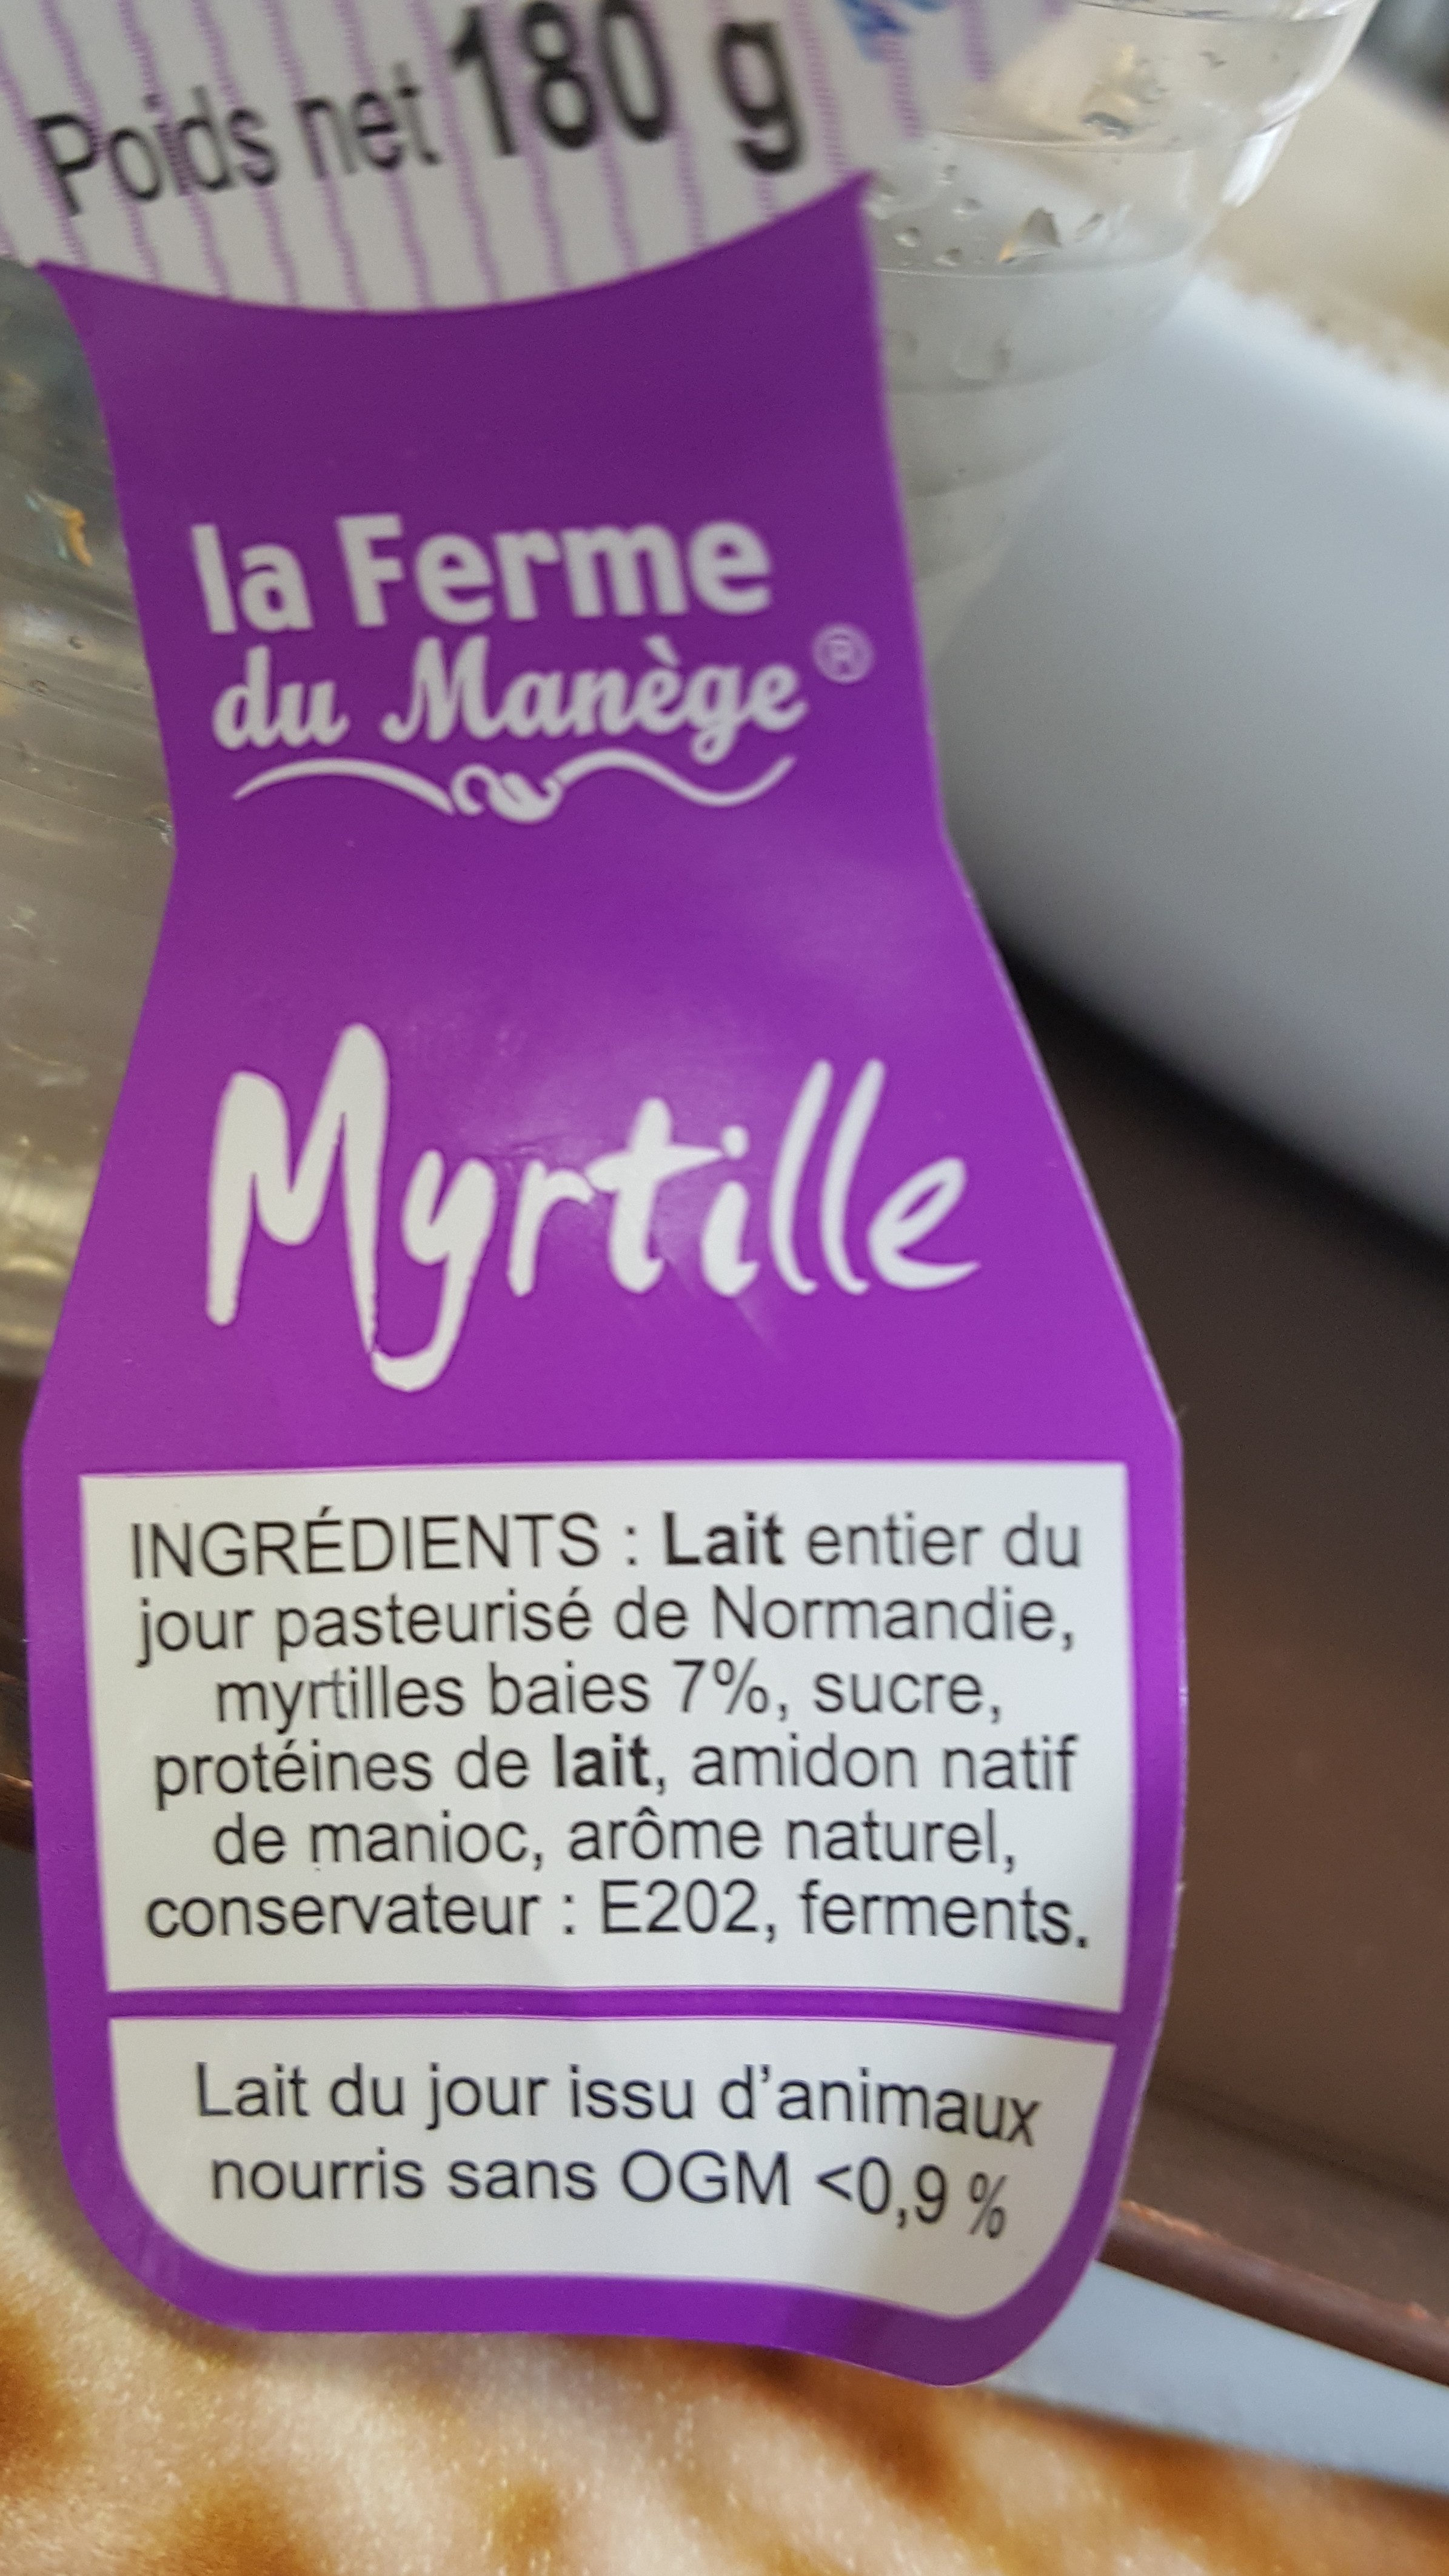 180G YAOURT LAIT ENTIER DU JOUR MYRTILLE FERMIER - Ingredients - fr